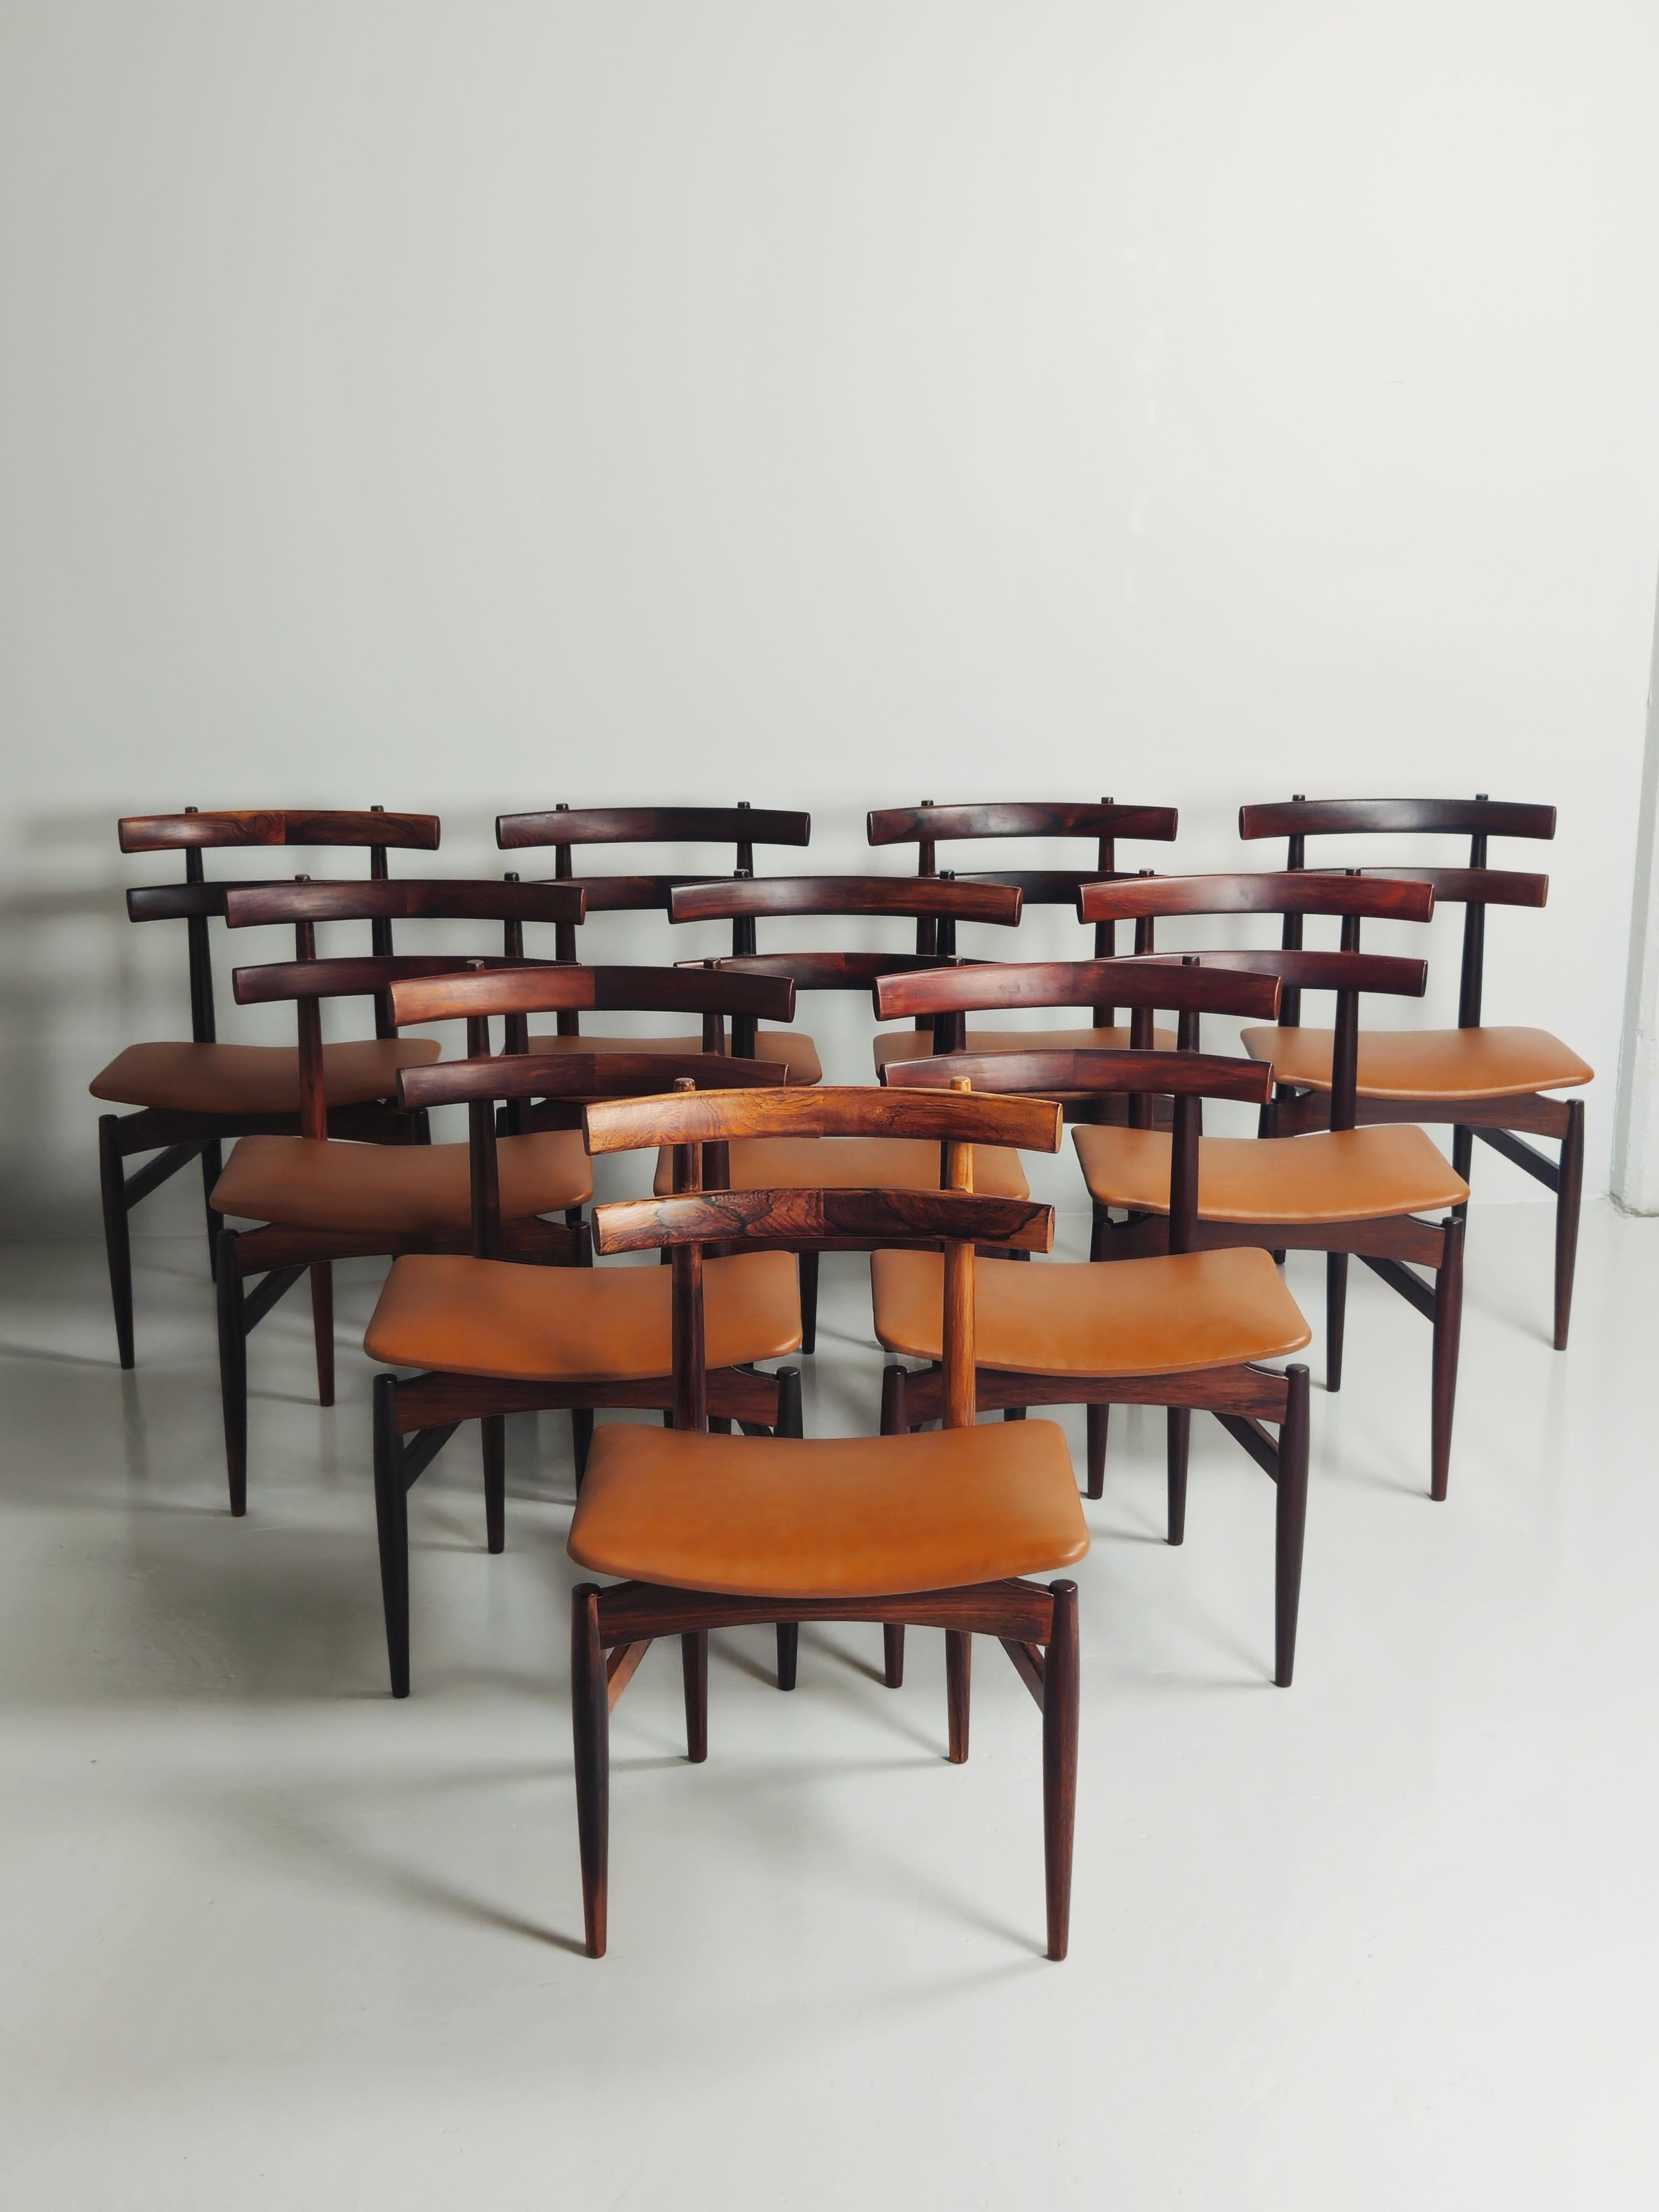 Très rare chaise de salle à manger conçue par Poul Hundevad au Danemark dans les années 1950. 

Fabriqué en bois de rose avec des sièges recouverts de cuir cognac de haute qualité.

Onze chaises disponibles. 